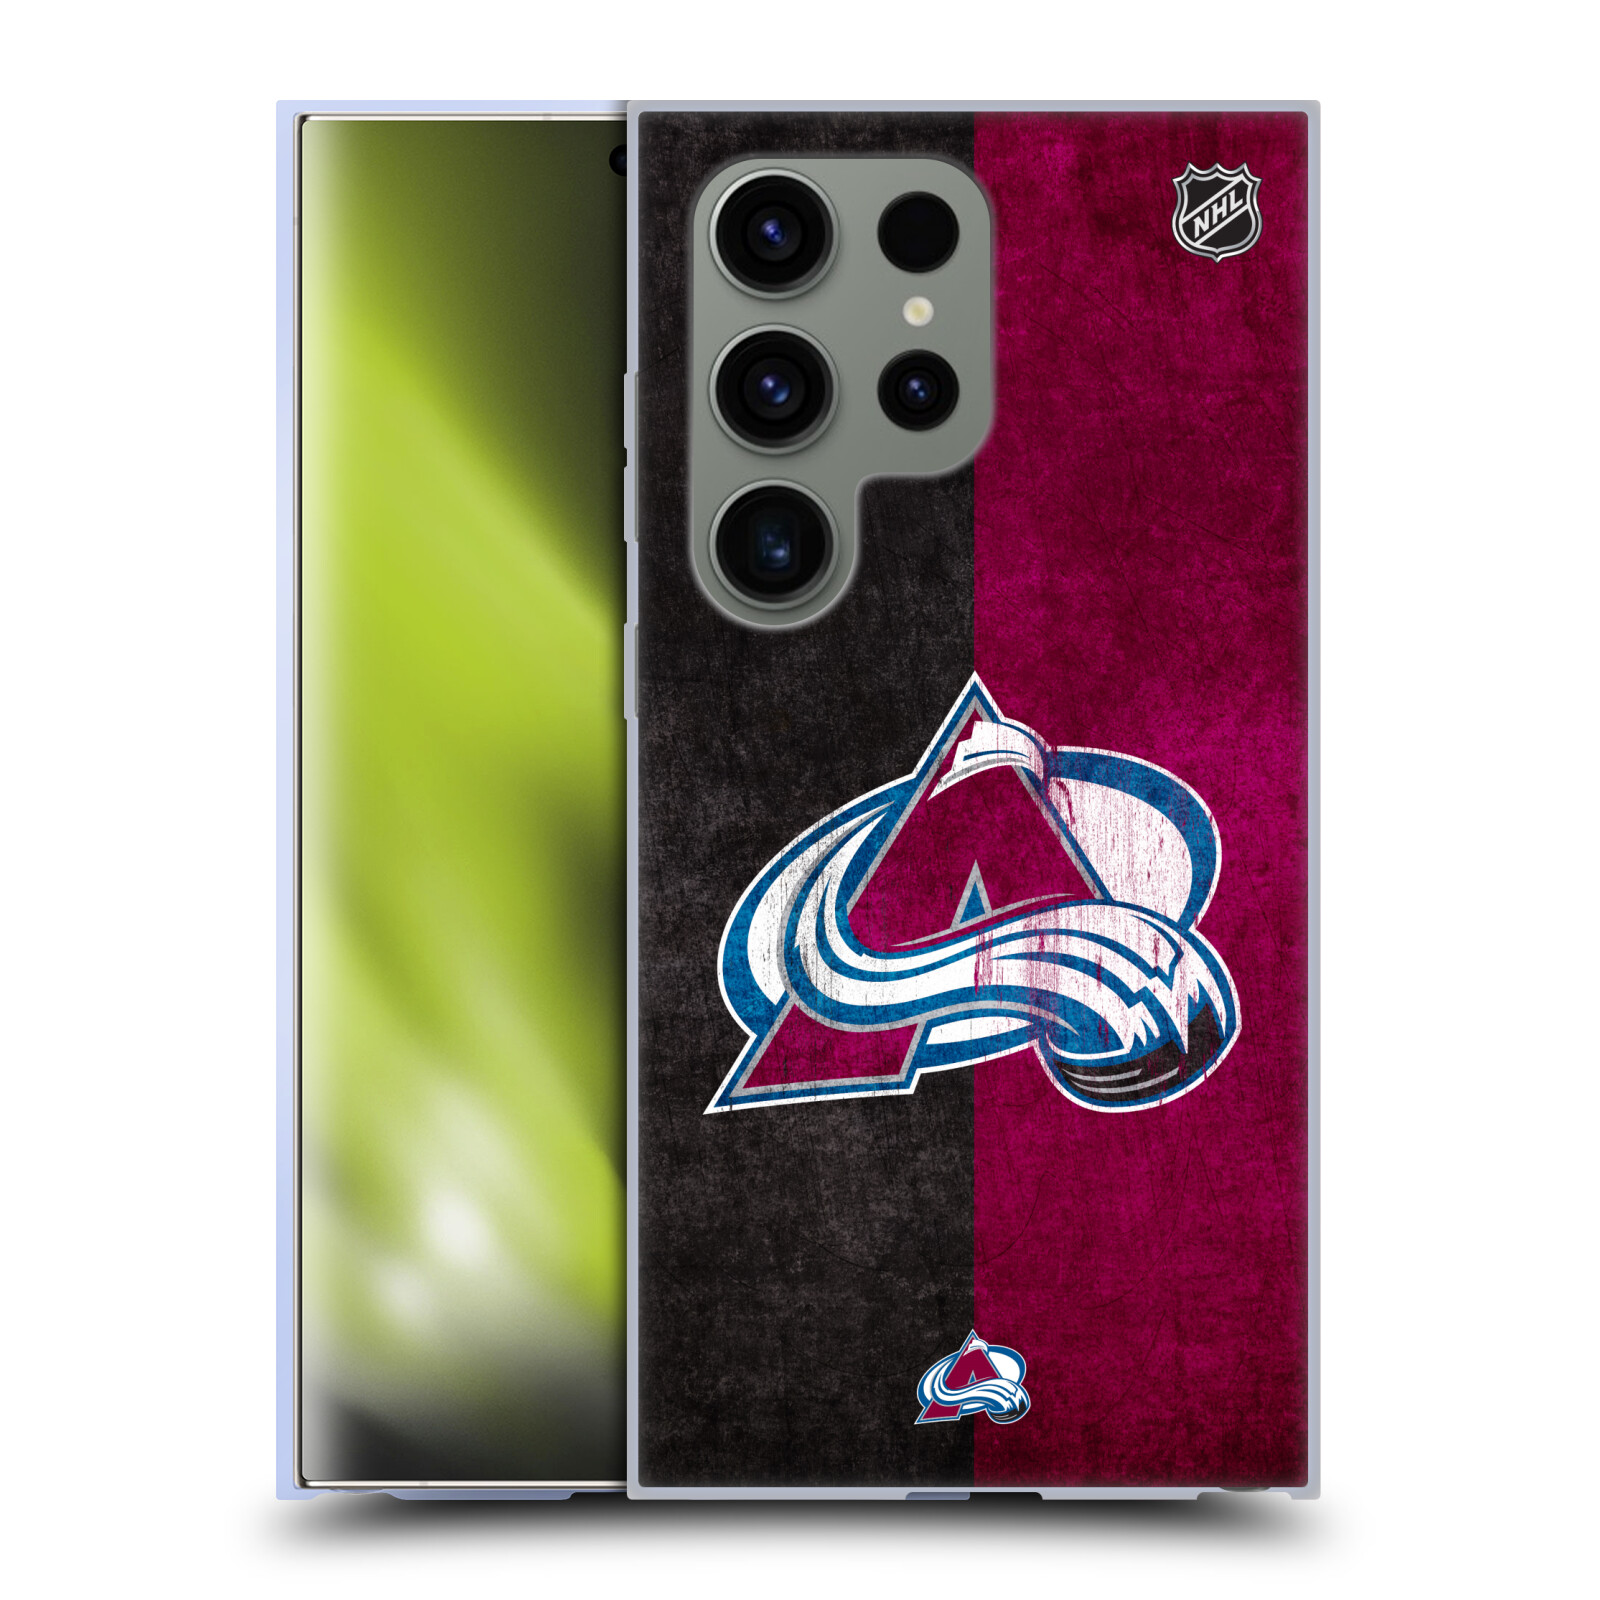 Silikonové lesklé pouzdro na mobil Samsung Galaxy S24 Ultra - NHL - Půlené logo Colorado Avalanche (Silikonový kryt, obal, pouzdro na mobilní telefon Samsung Galaxy S24 Ultra s licencovaným motivem NHL - Půlené logo Colorado Avalanche)